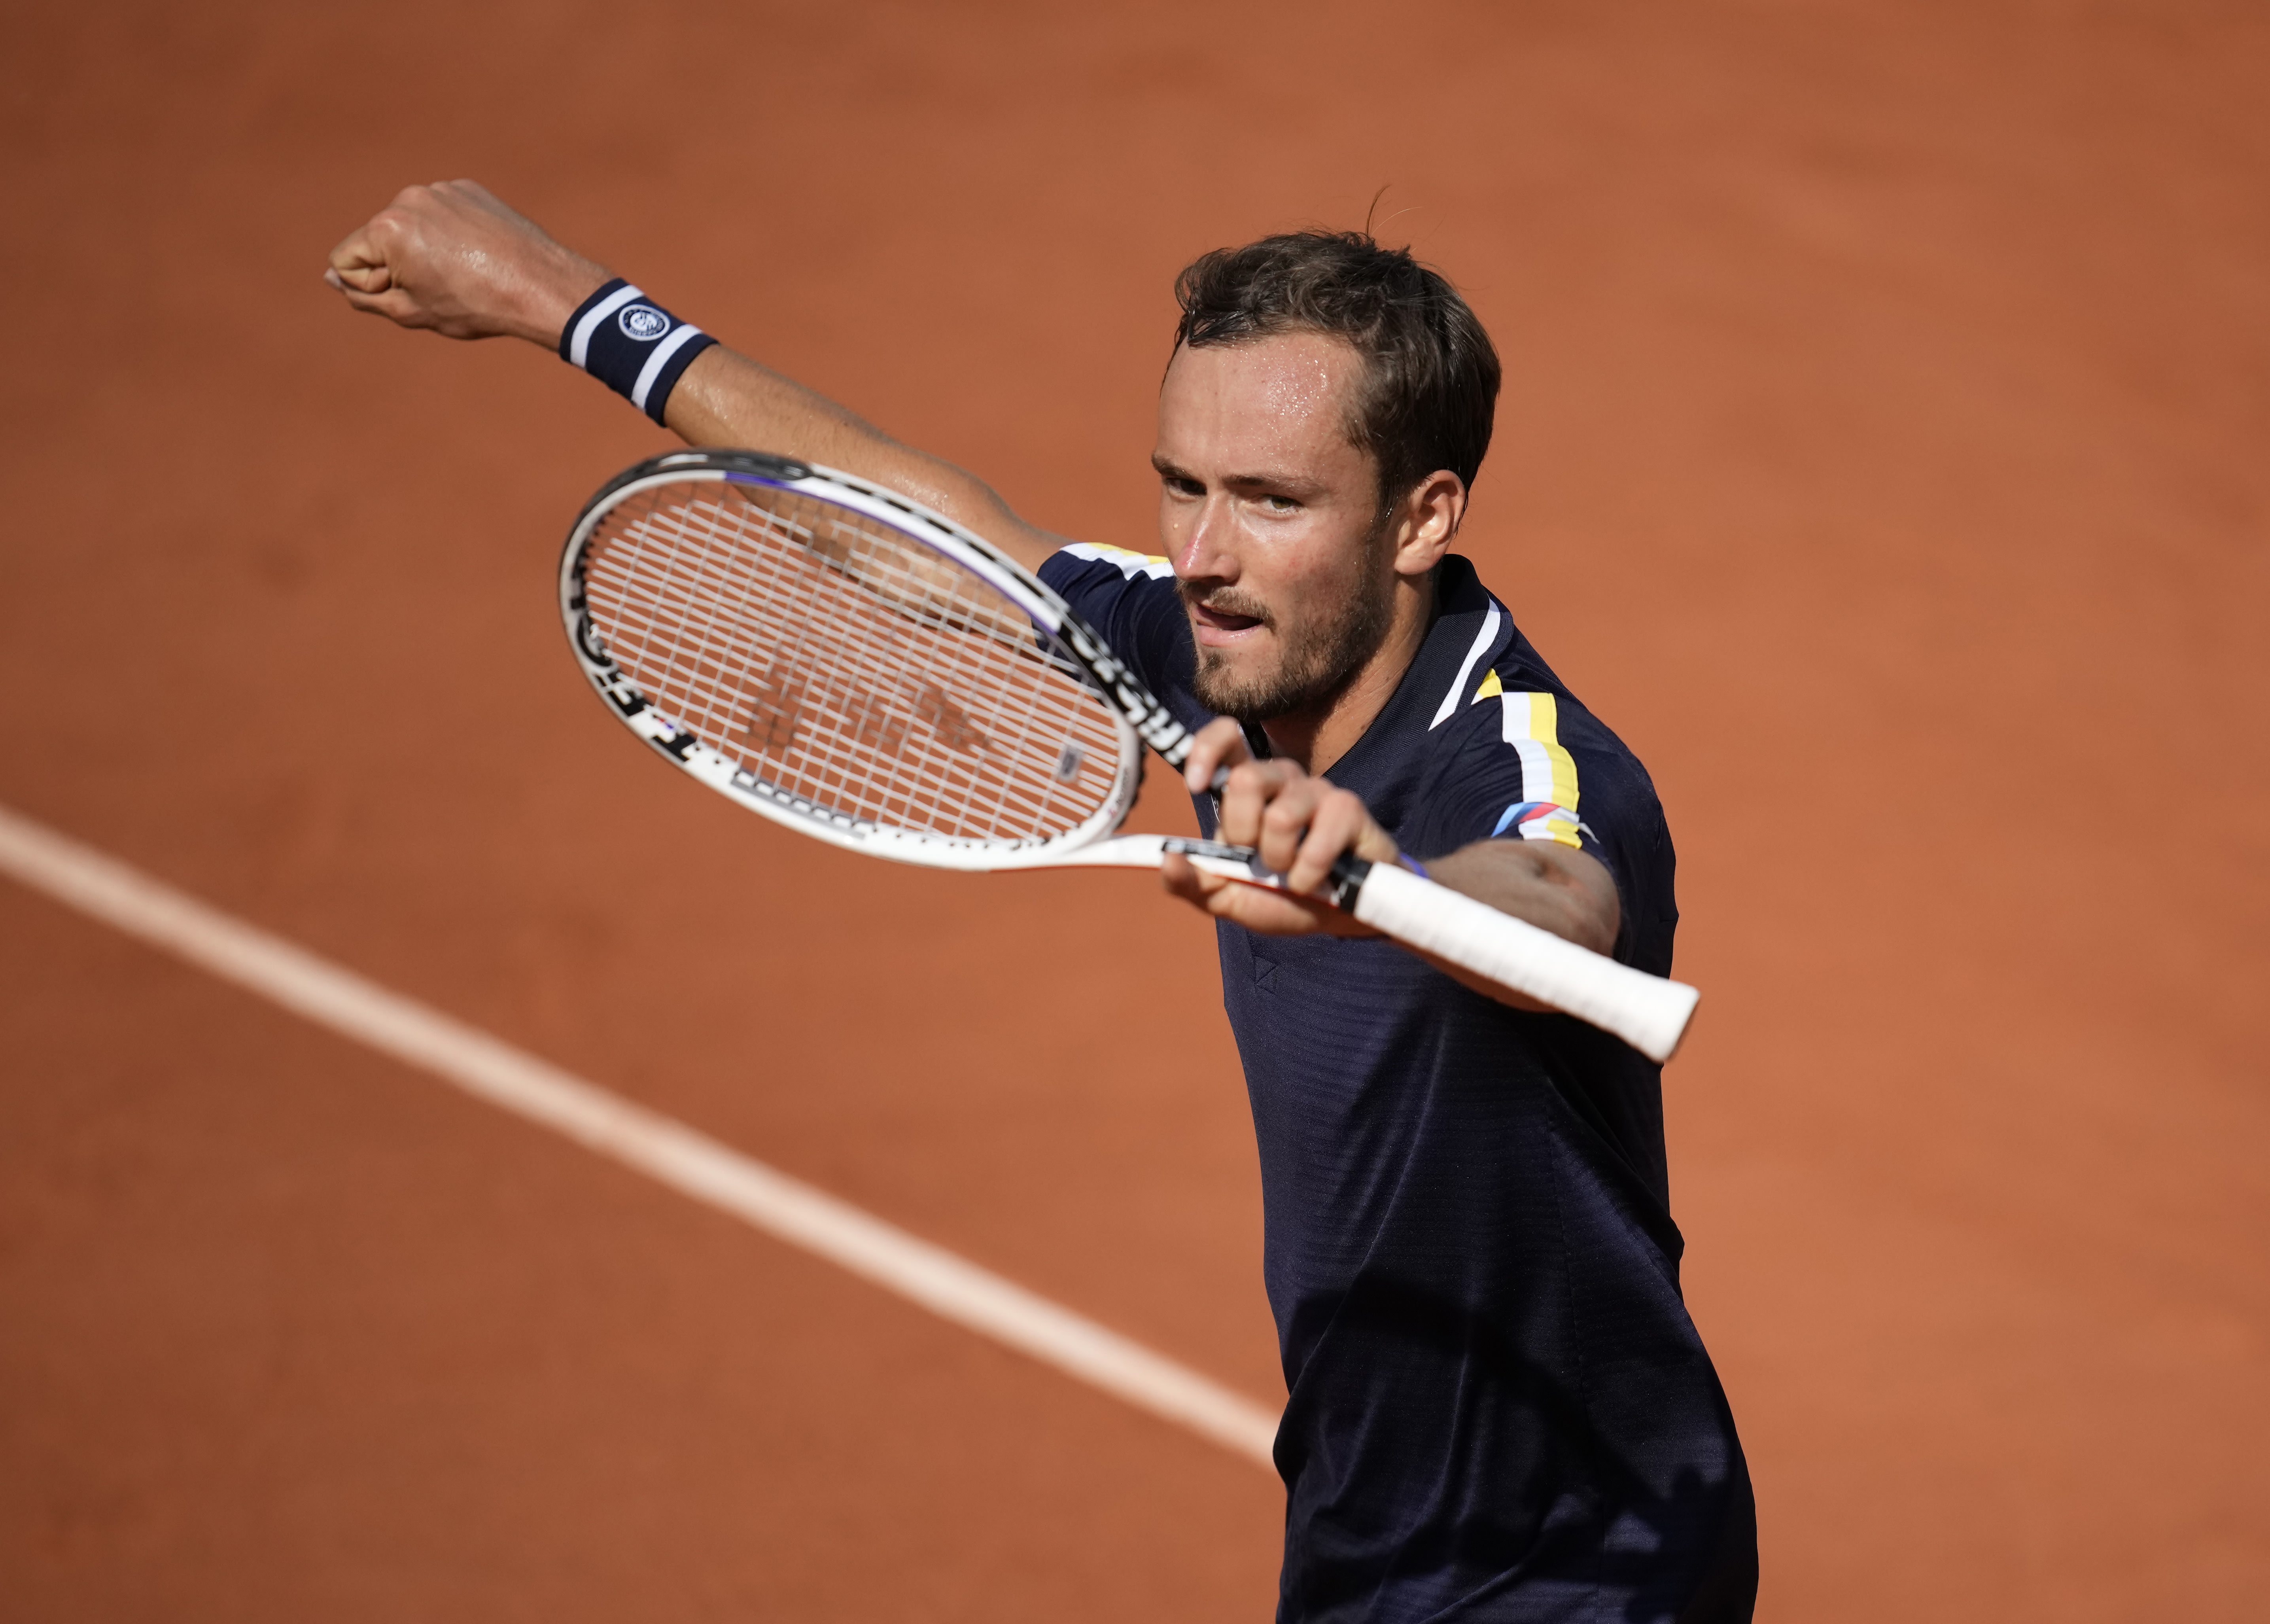 MedvedevTsitsipas showdown highlights French Open schedule